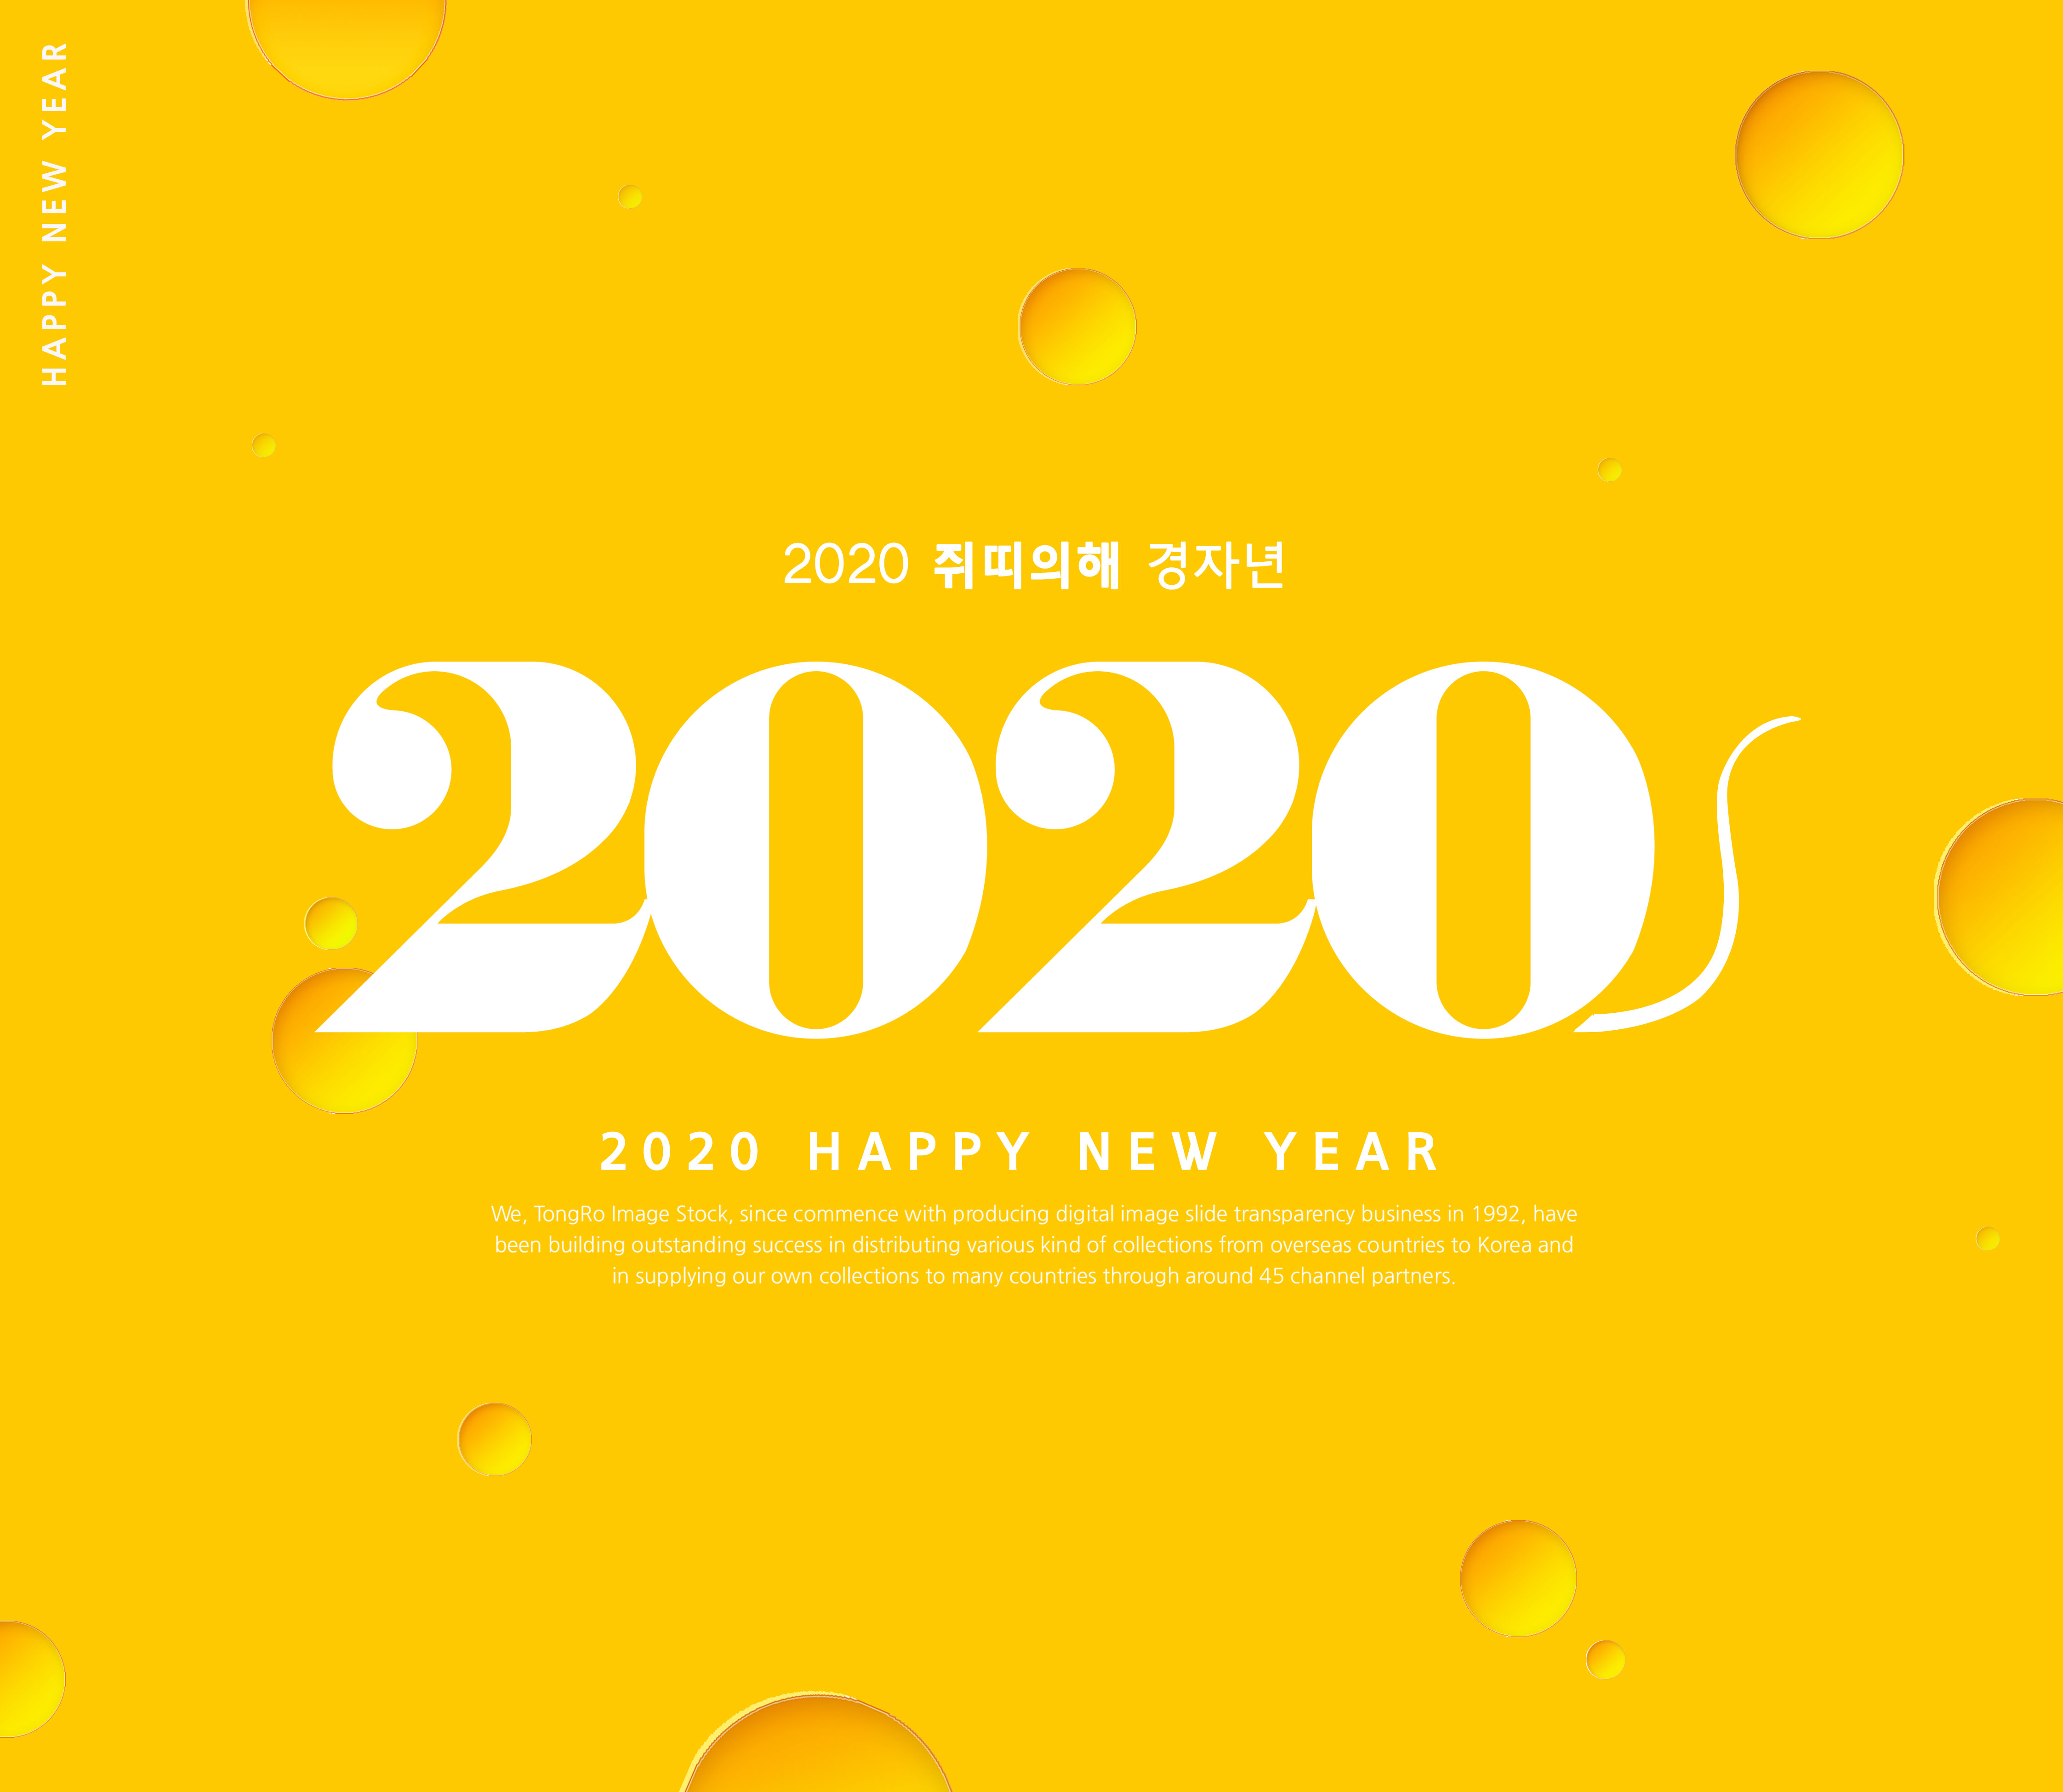 2020新年快乐主题海报模板合辑[PSD]插图(6)